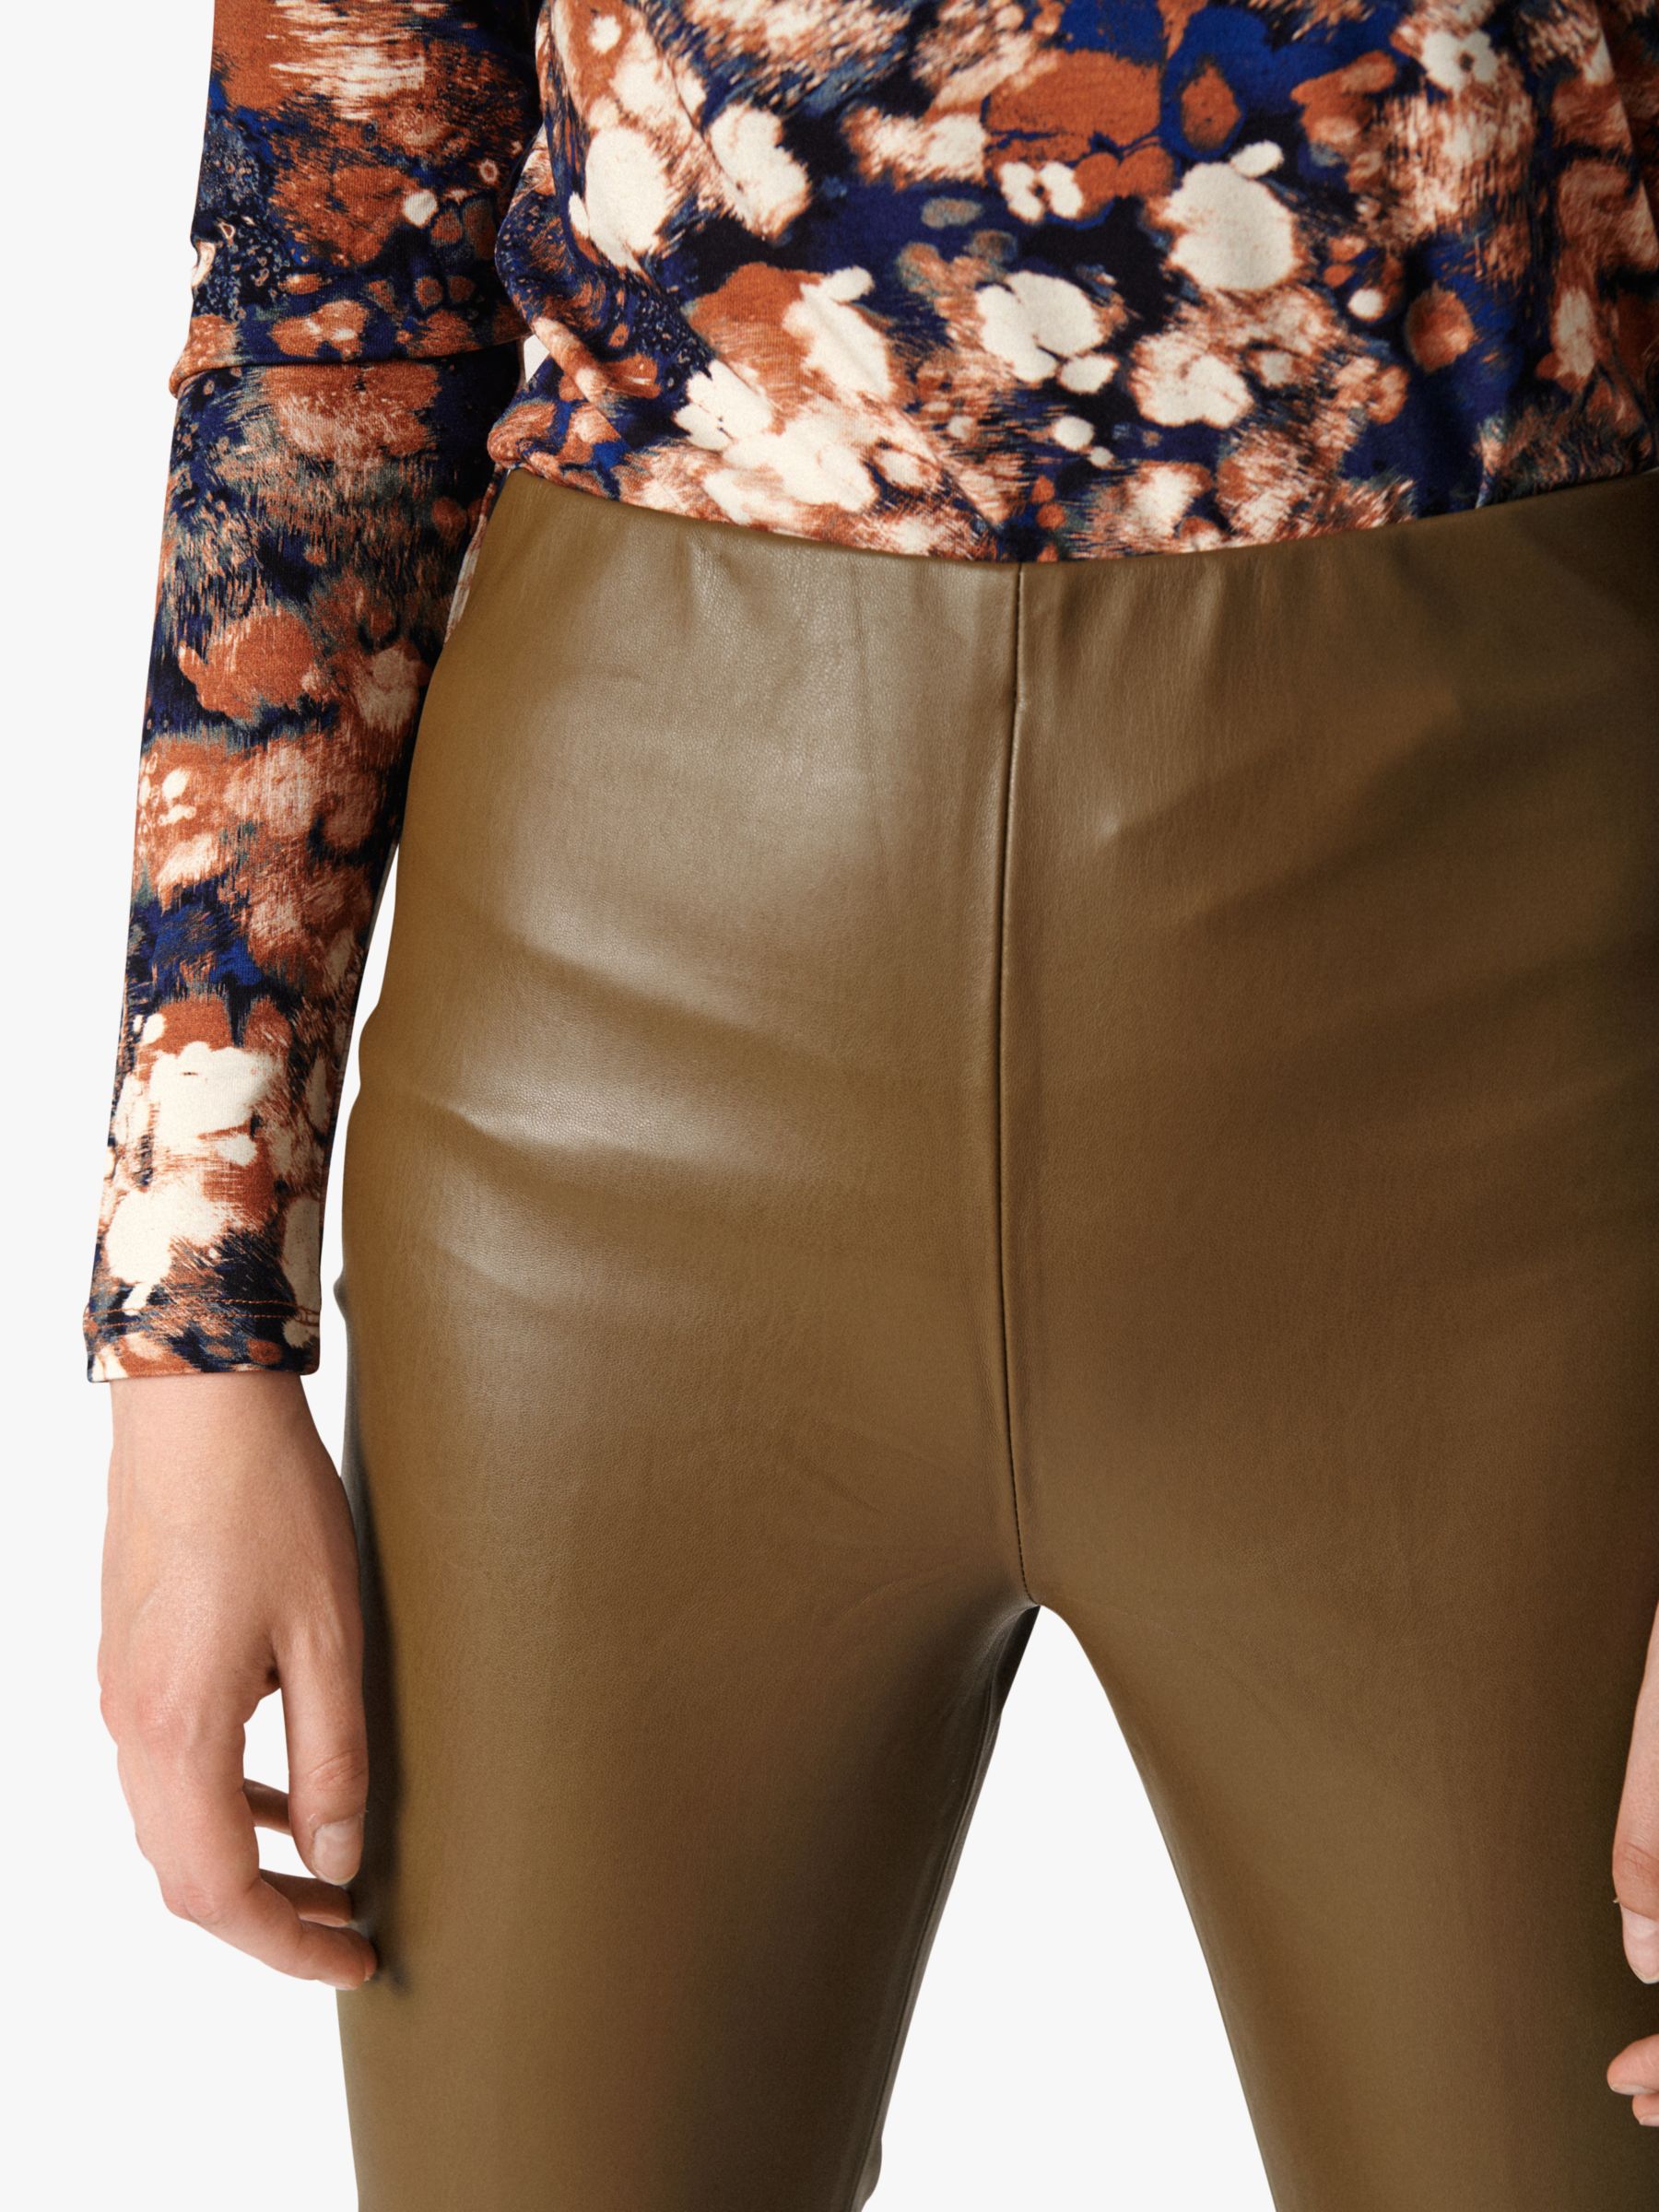 Buy Soaked In Luxury Kaylee Skinny Trousers Online at johnlewis.com